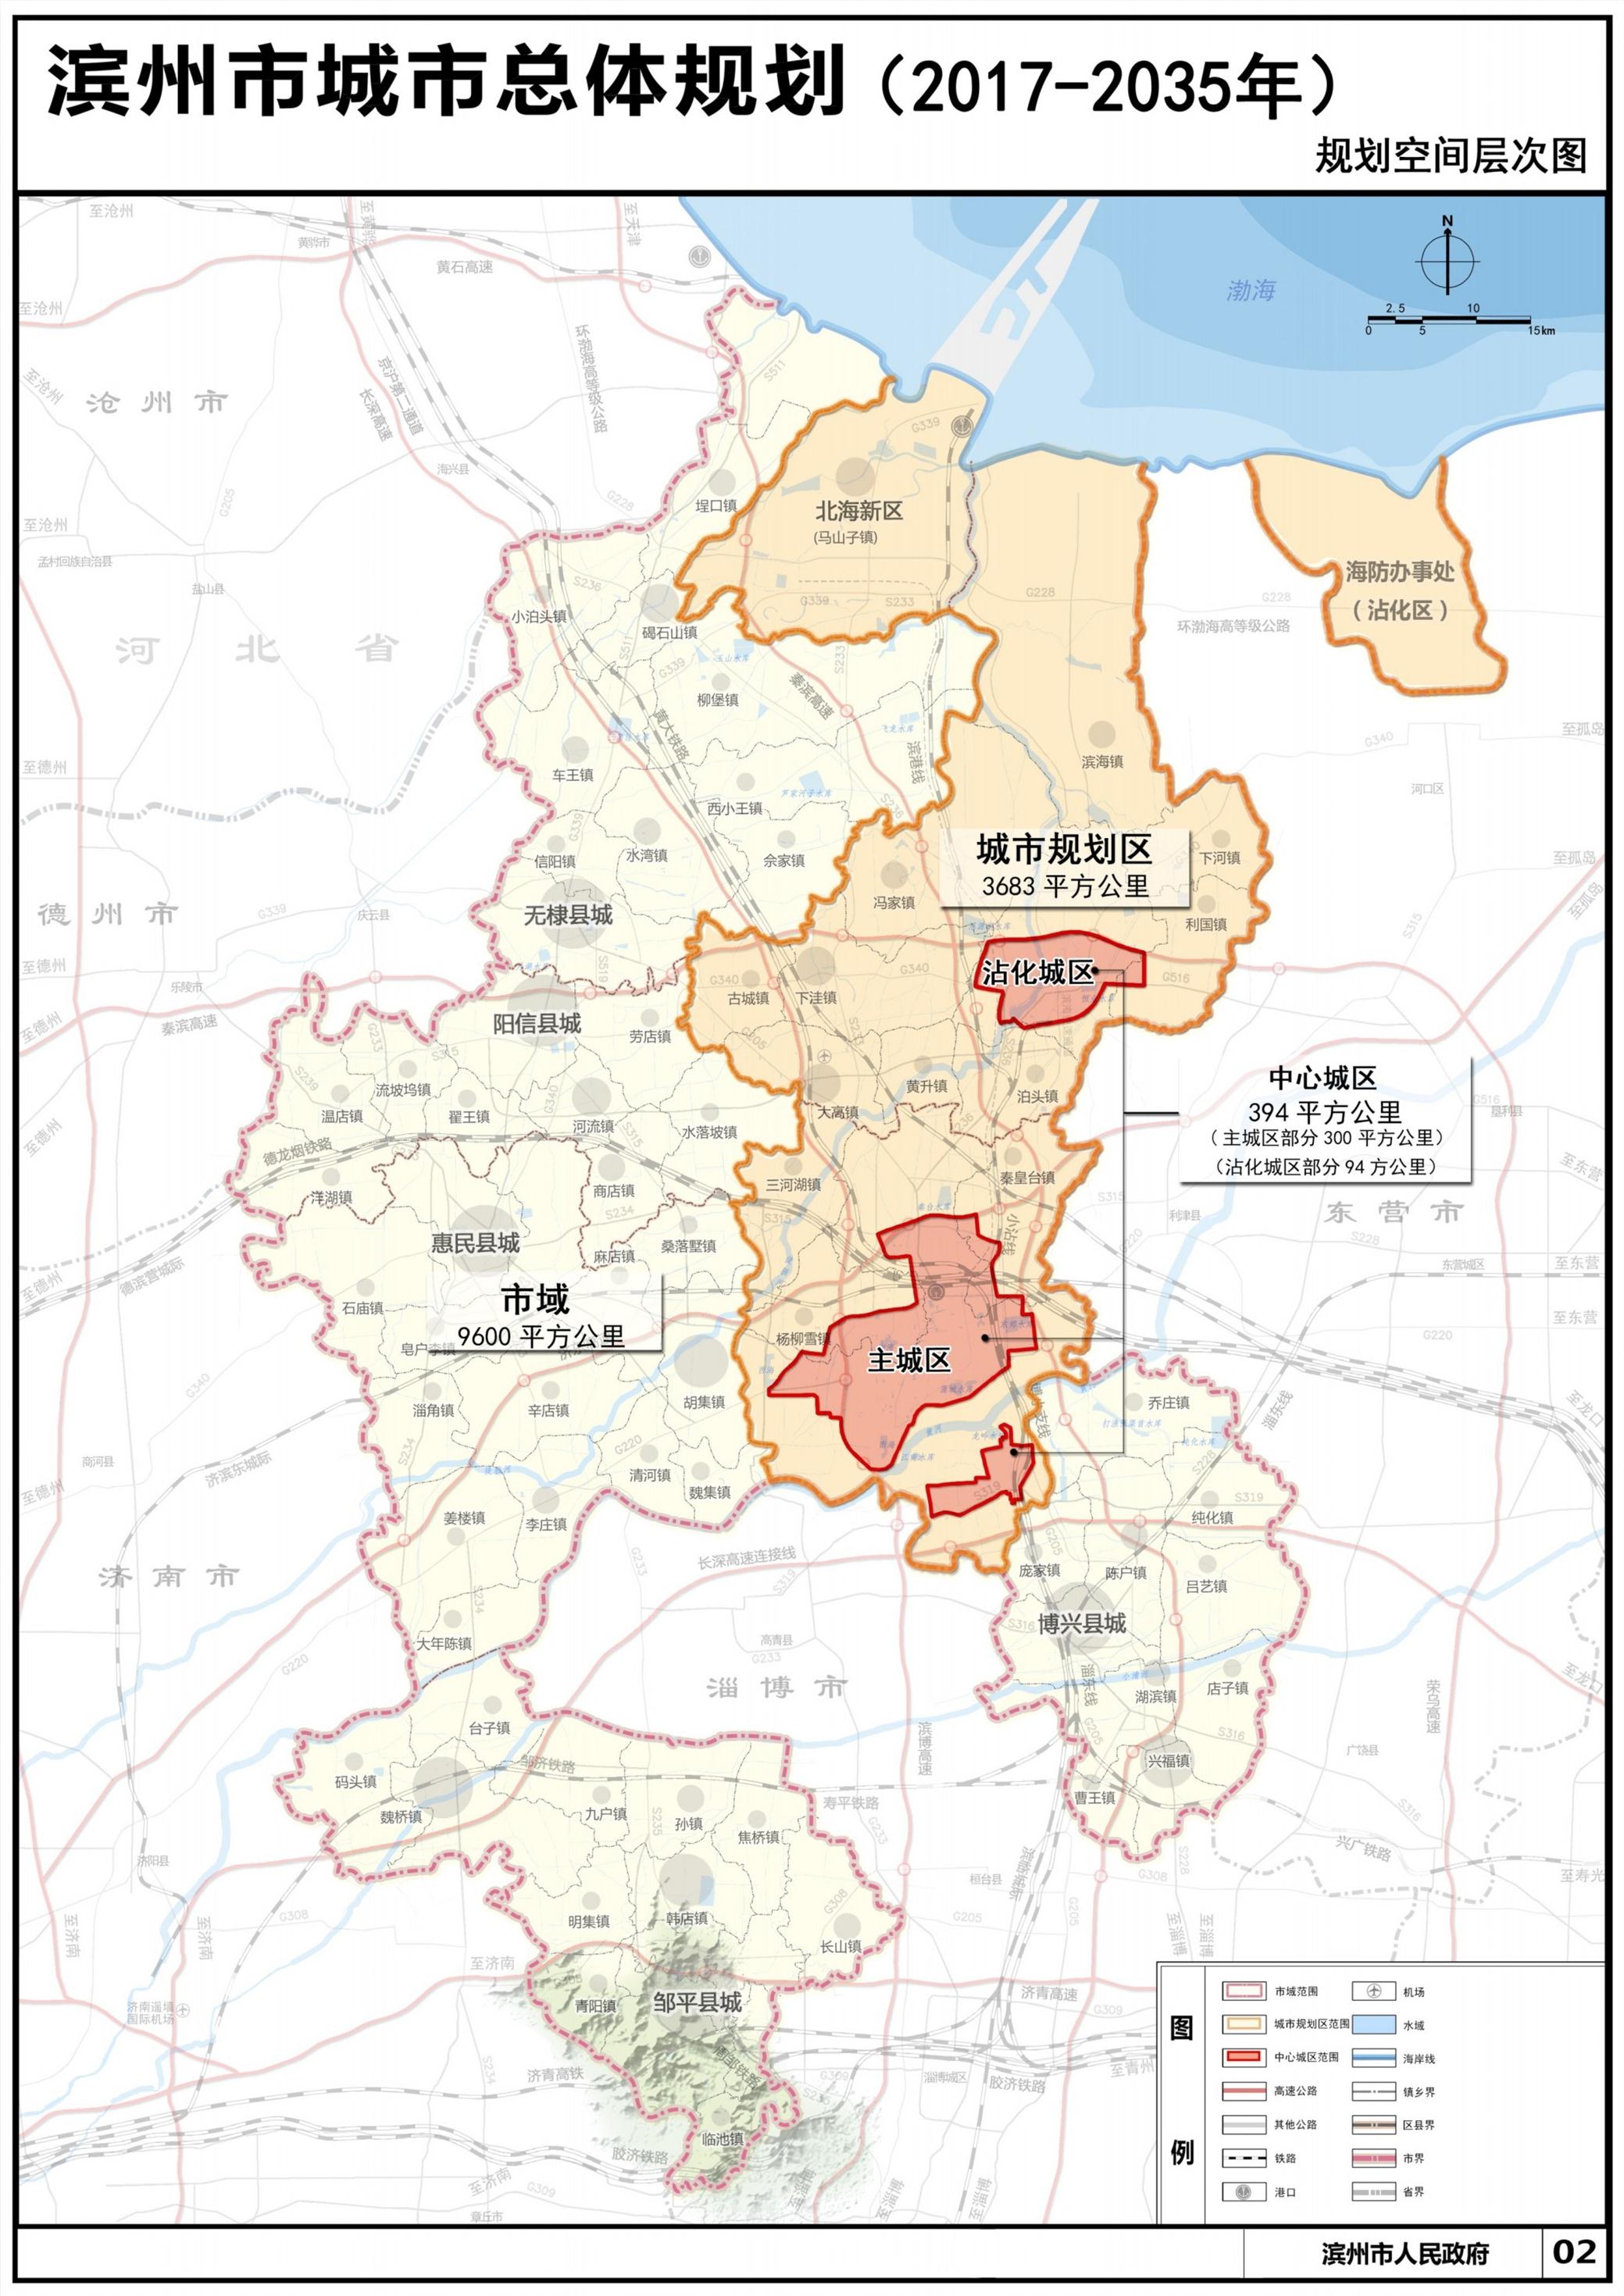 滨州市城市总体规划20172035年草案公示和征集